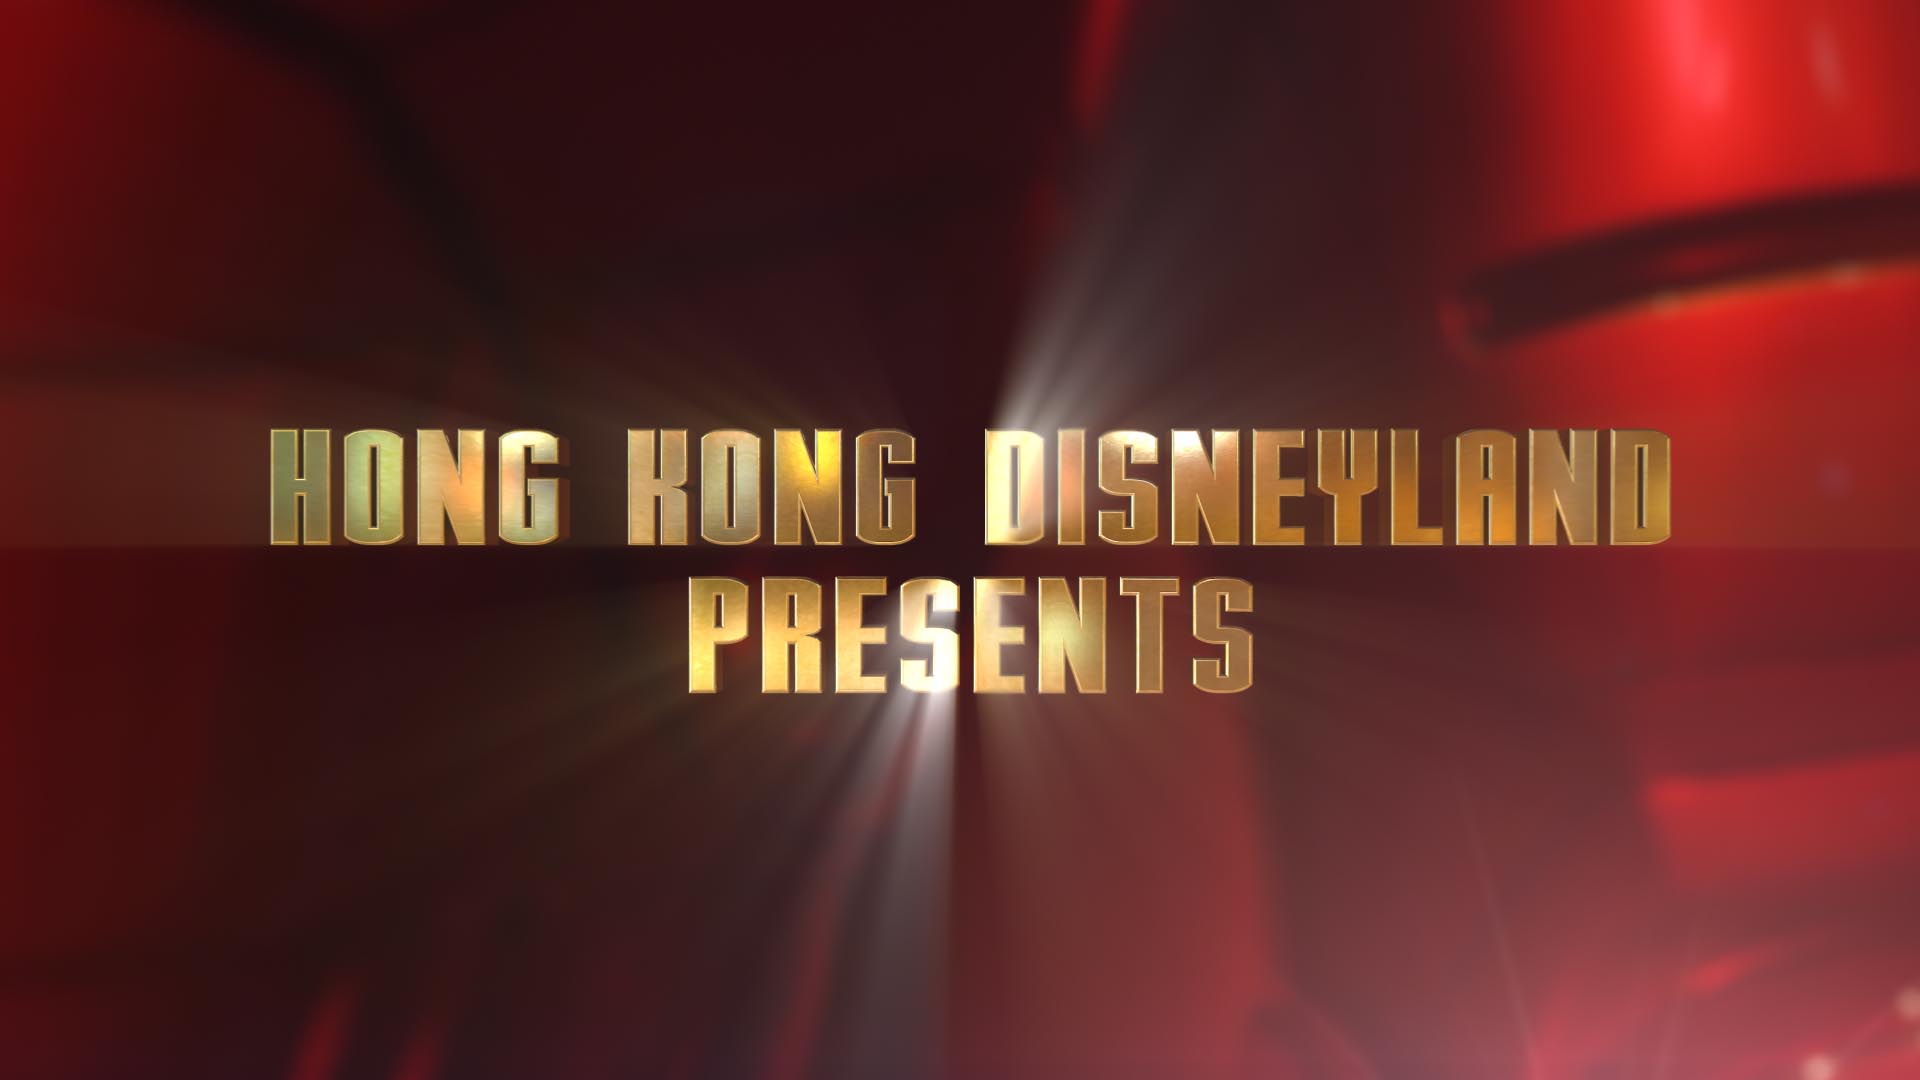 Hong Kong Disneyland Presents